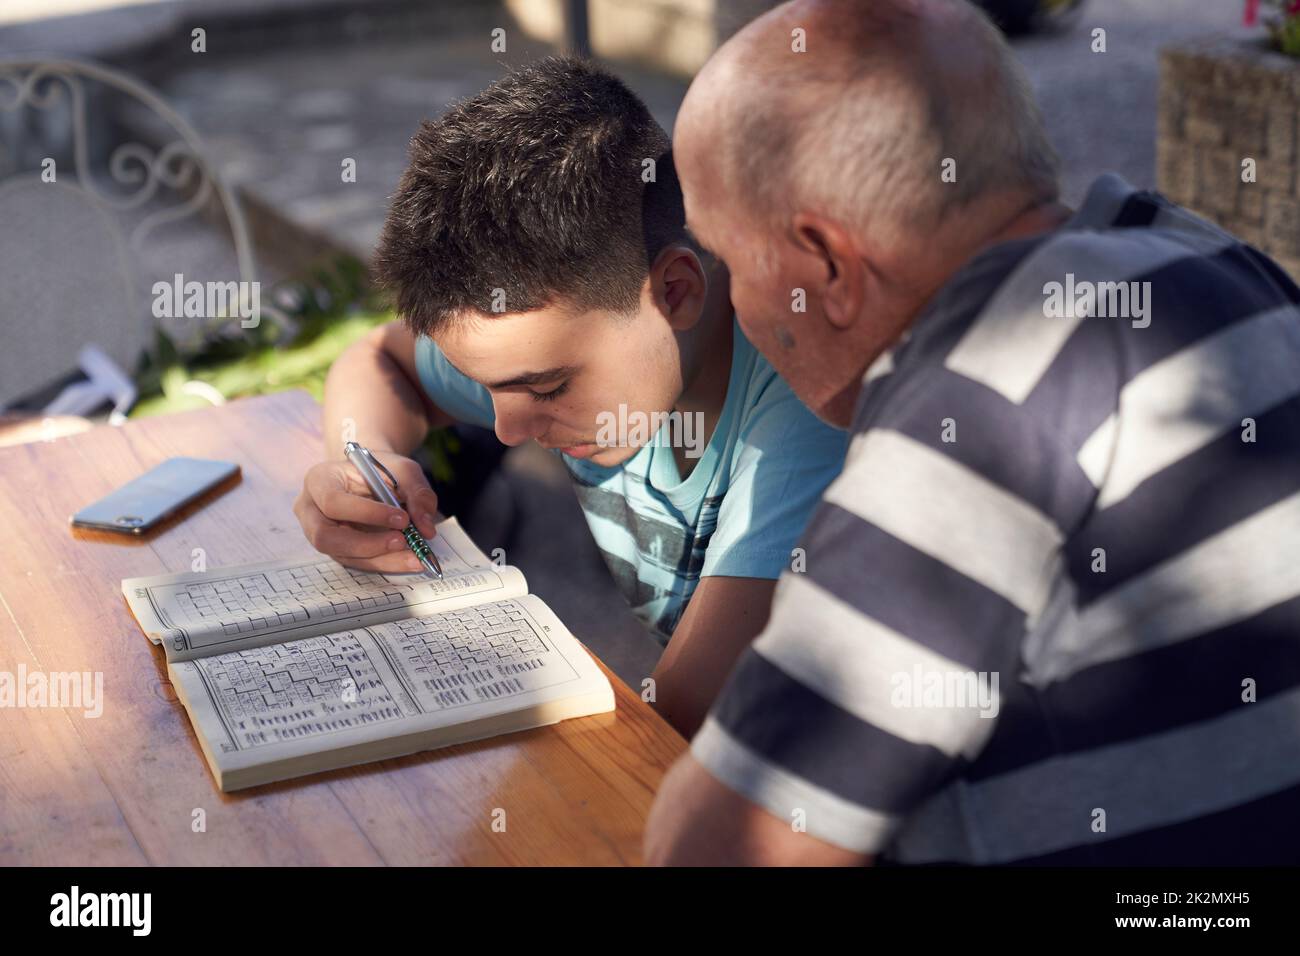 Un uomo anziano seduto a fare hobby a parole incrociate con suo nipote. Foto Stock